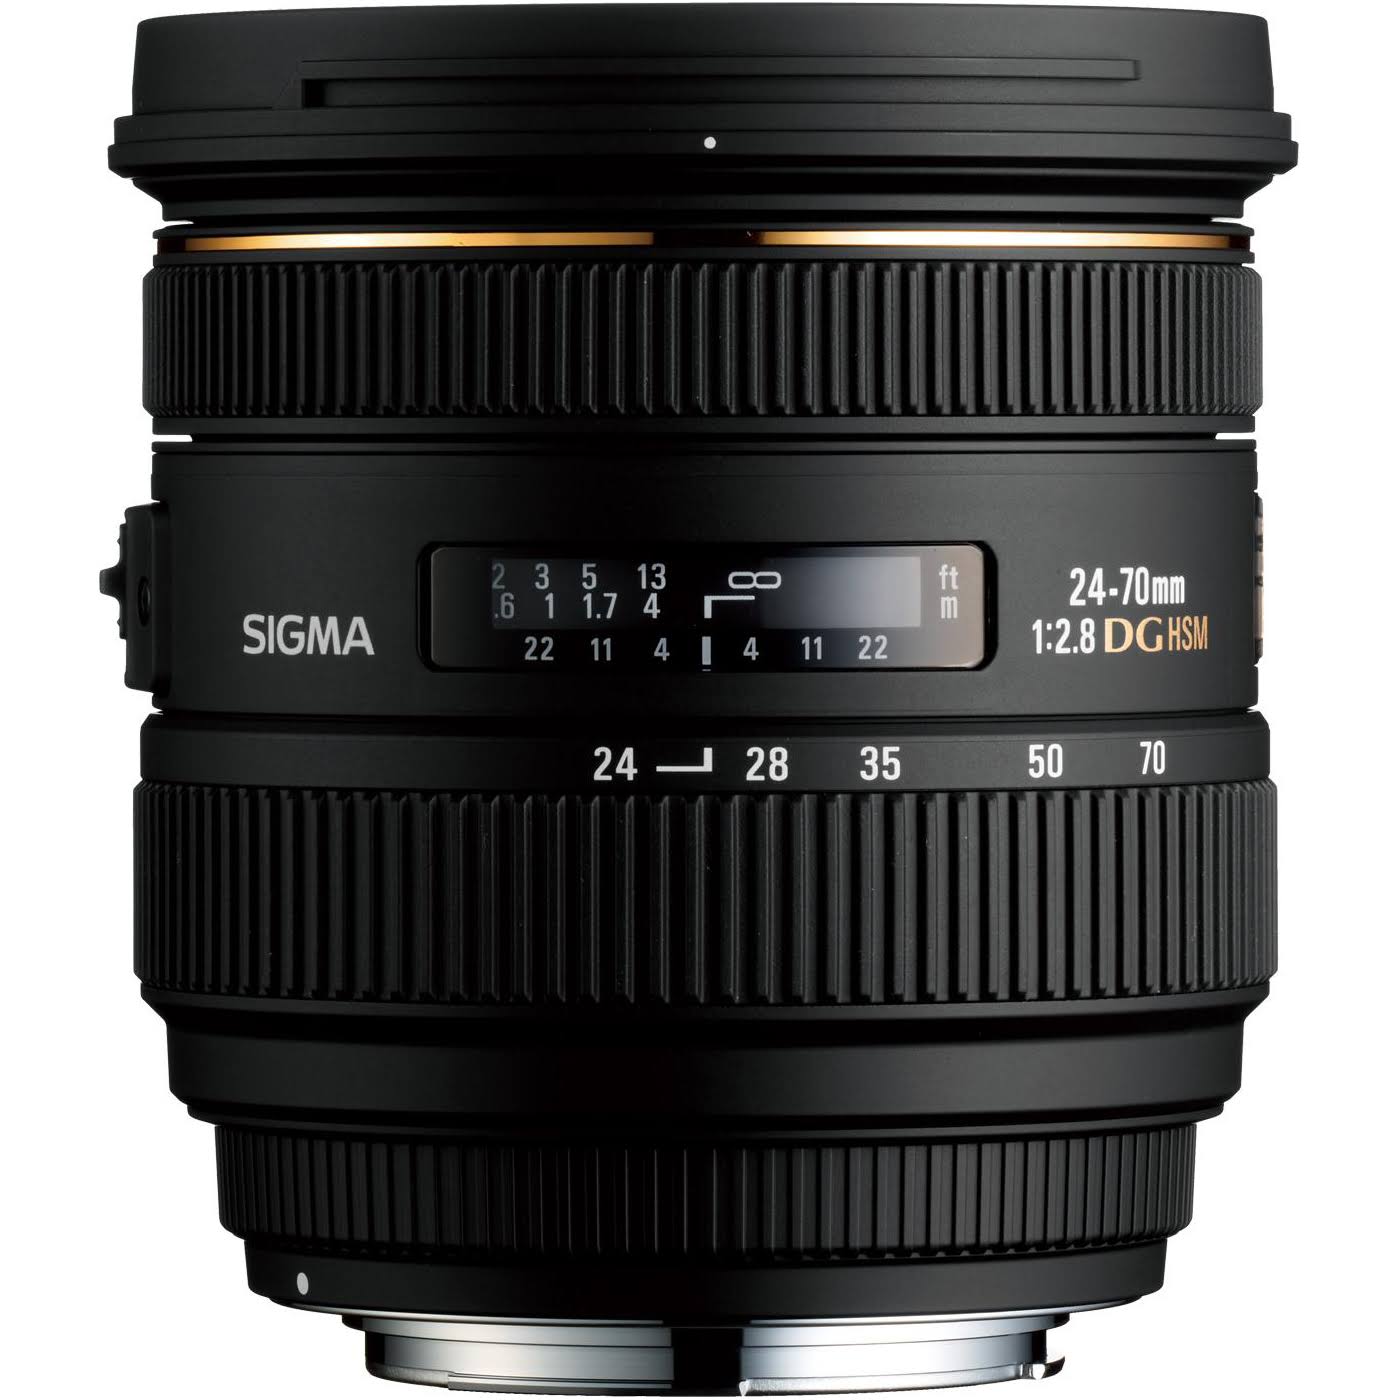 SIGMA Standardowy obiektyw zmiennoogniskowy 24-70 mm f/2.8 IF EX DG HSM AF do lustrzanek cyfrowych Canon